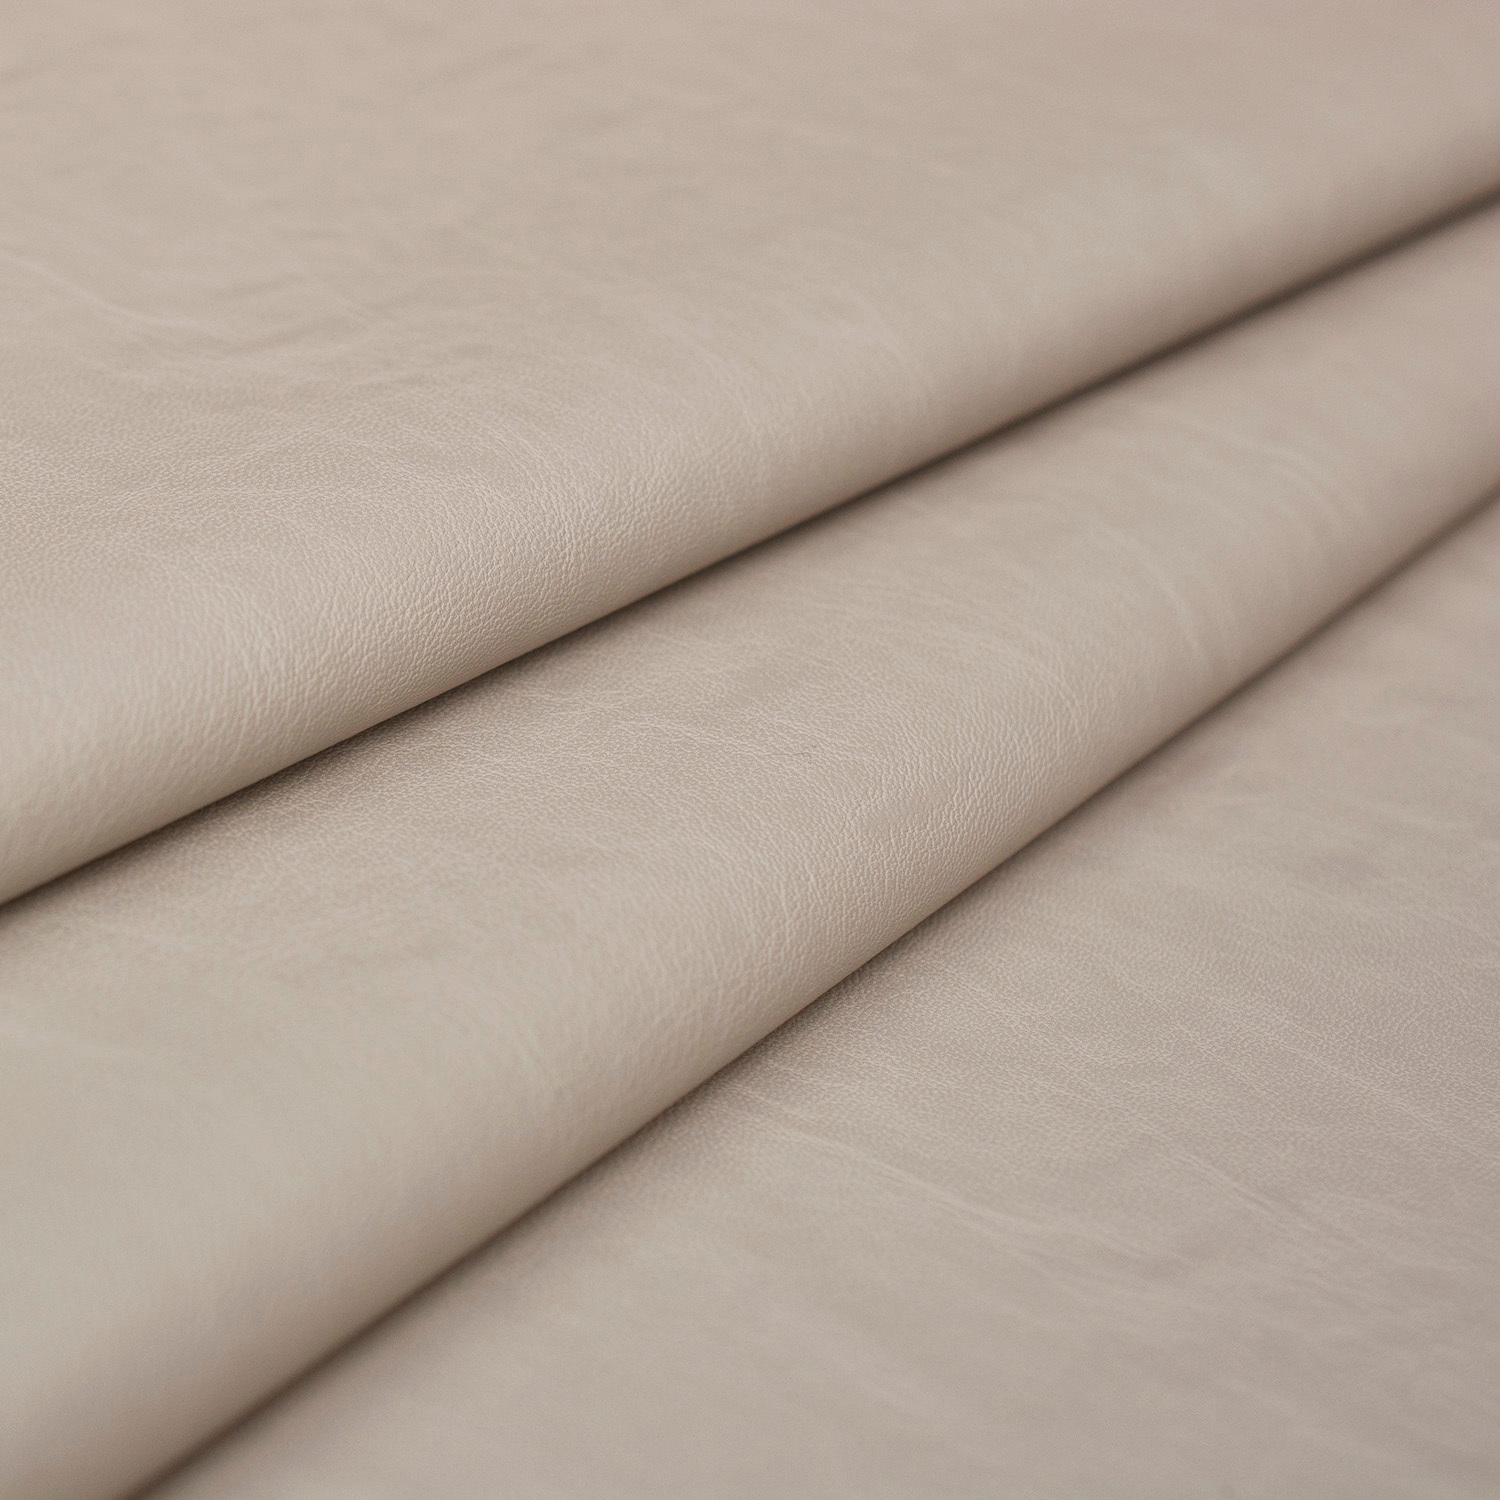 Tkanina APPLE to wysokiej jakości tkanina ekologiczna skóropodobna o wszechstronnym zastosowaniu.